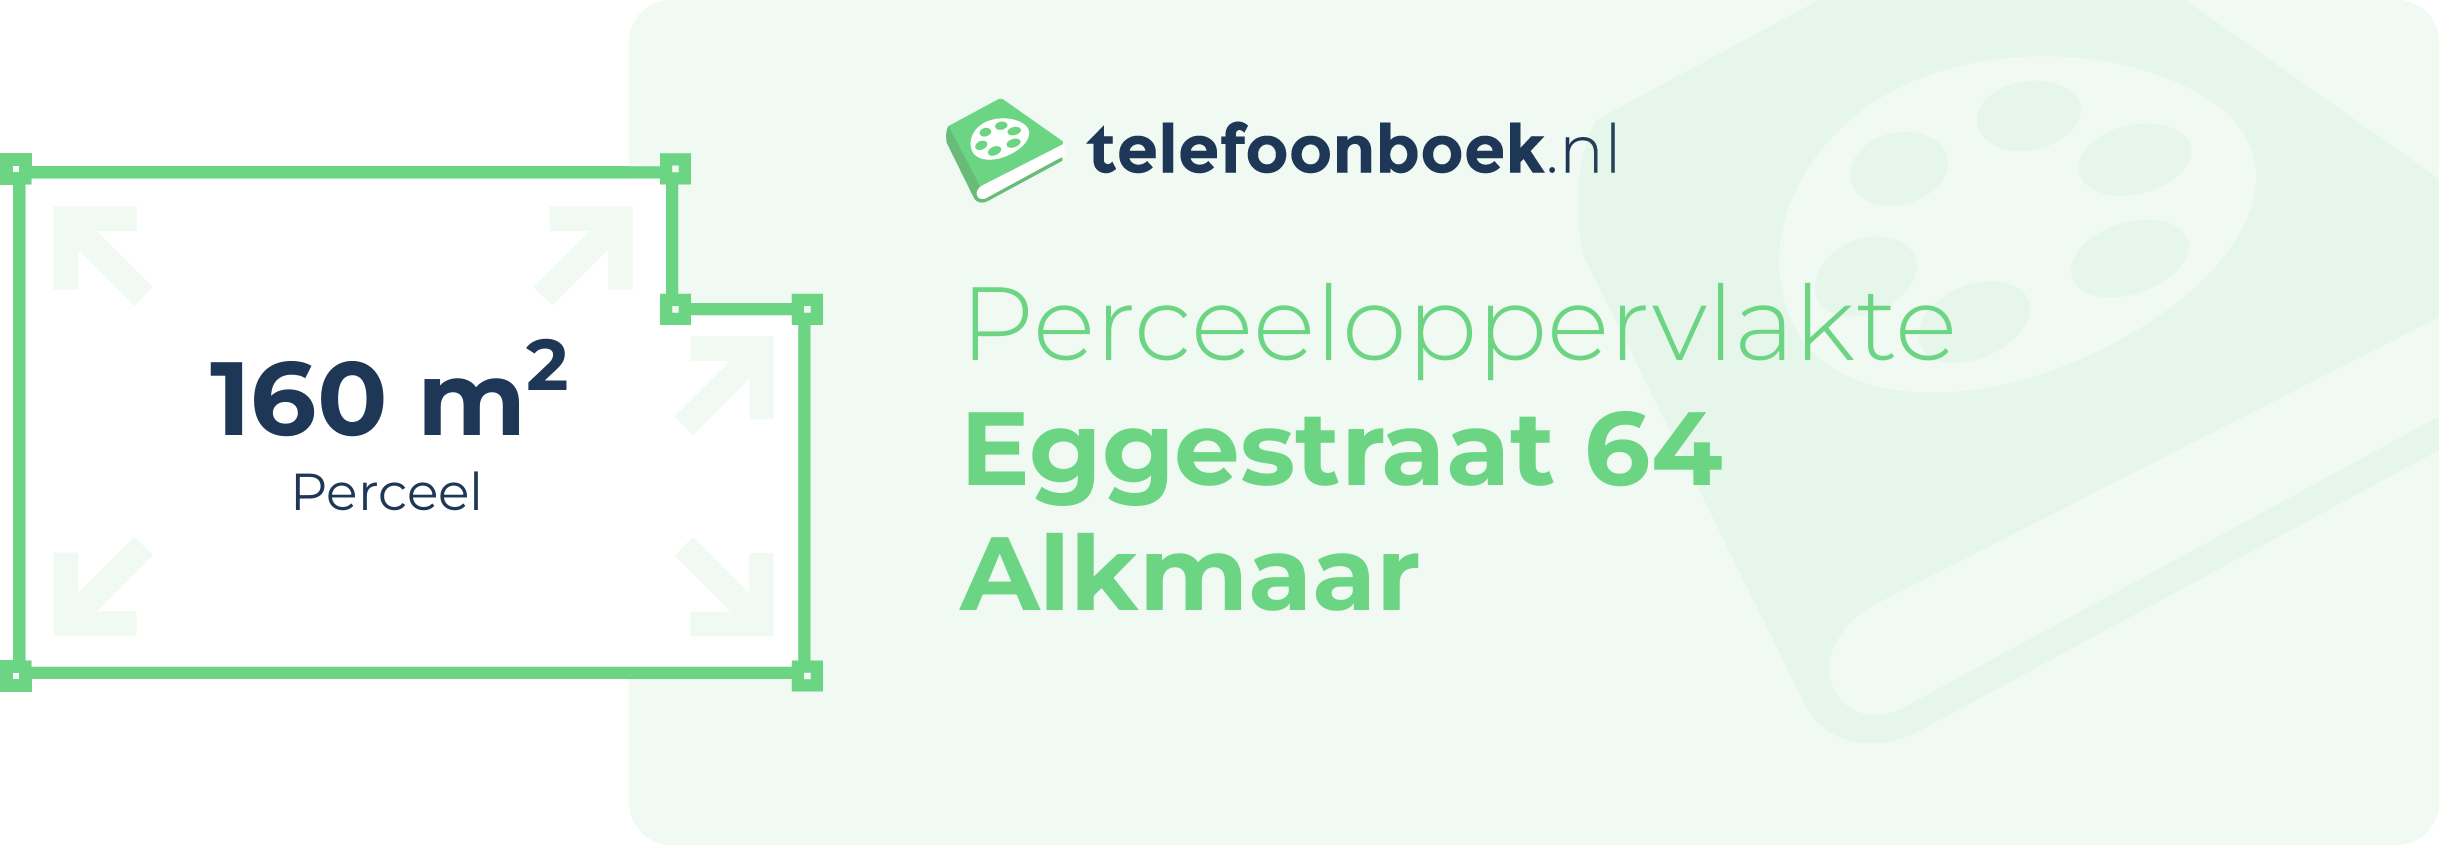 Perceeloppervlakte Eggestraat 64 Alkmaar